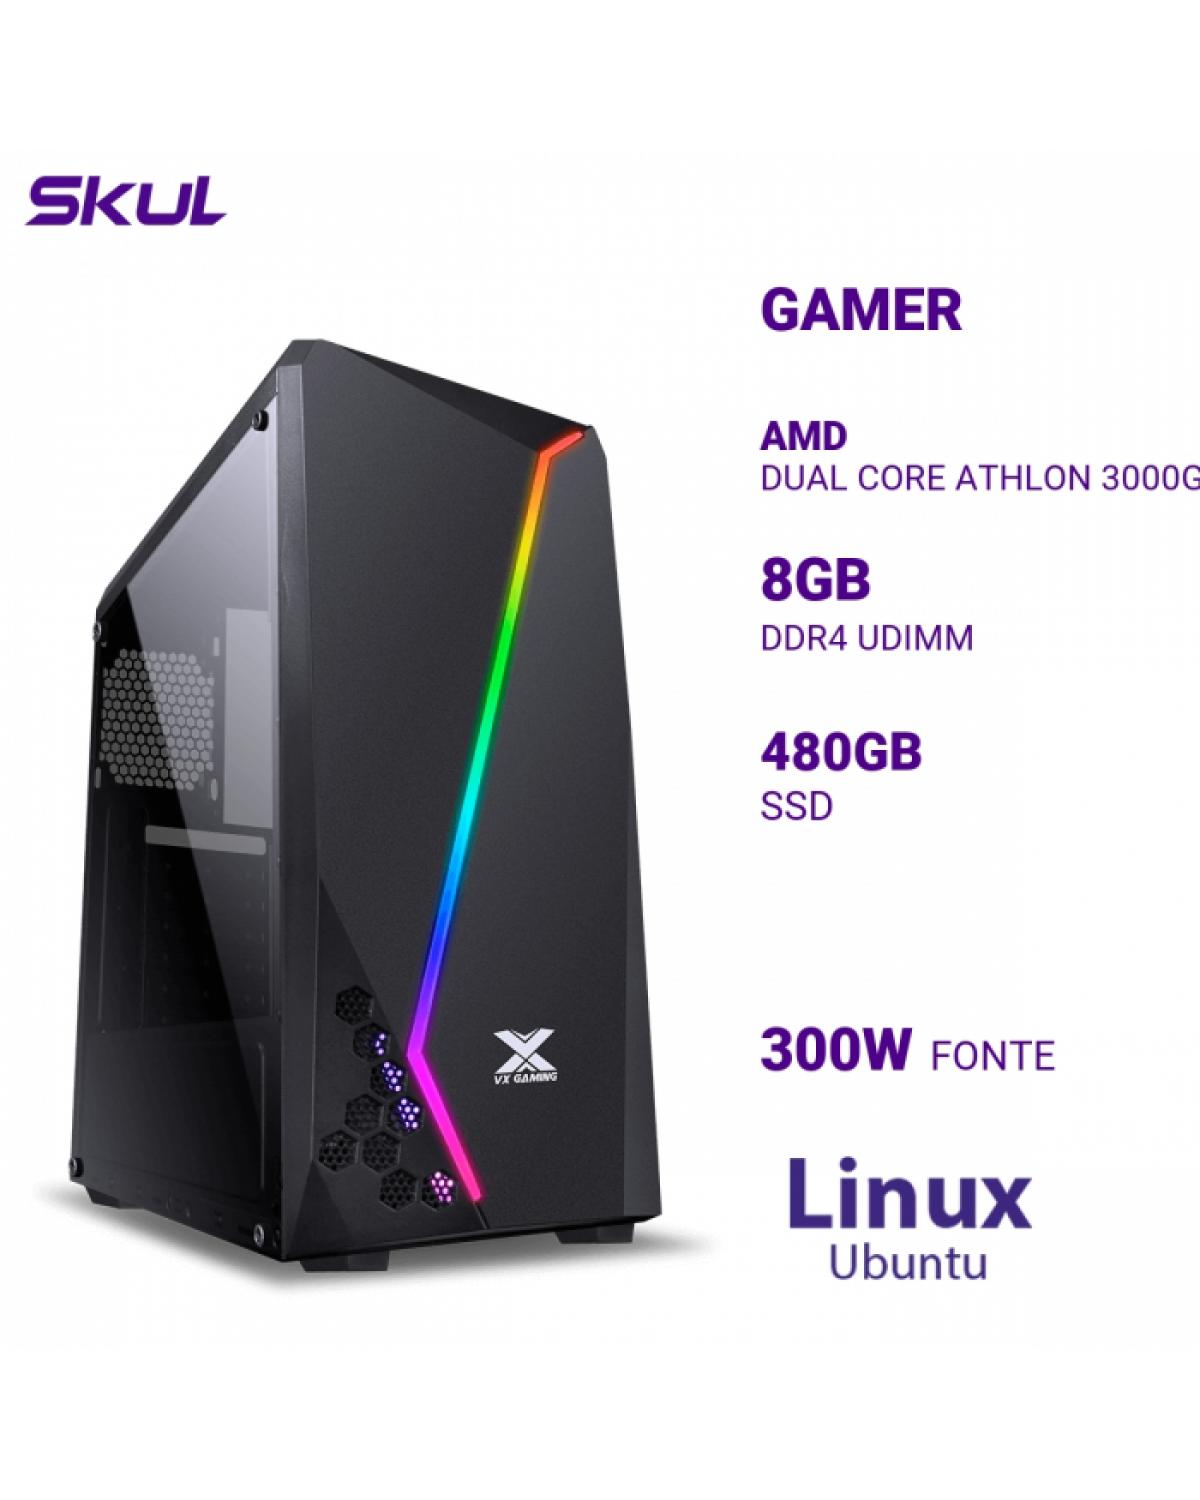 COMPUTADOR GAMER 1000 DUAL CORE ATHLON 3000G 3.50GHZ MEM 8GB DDR4 SSD 480GB FONTE 300W LINUX